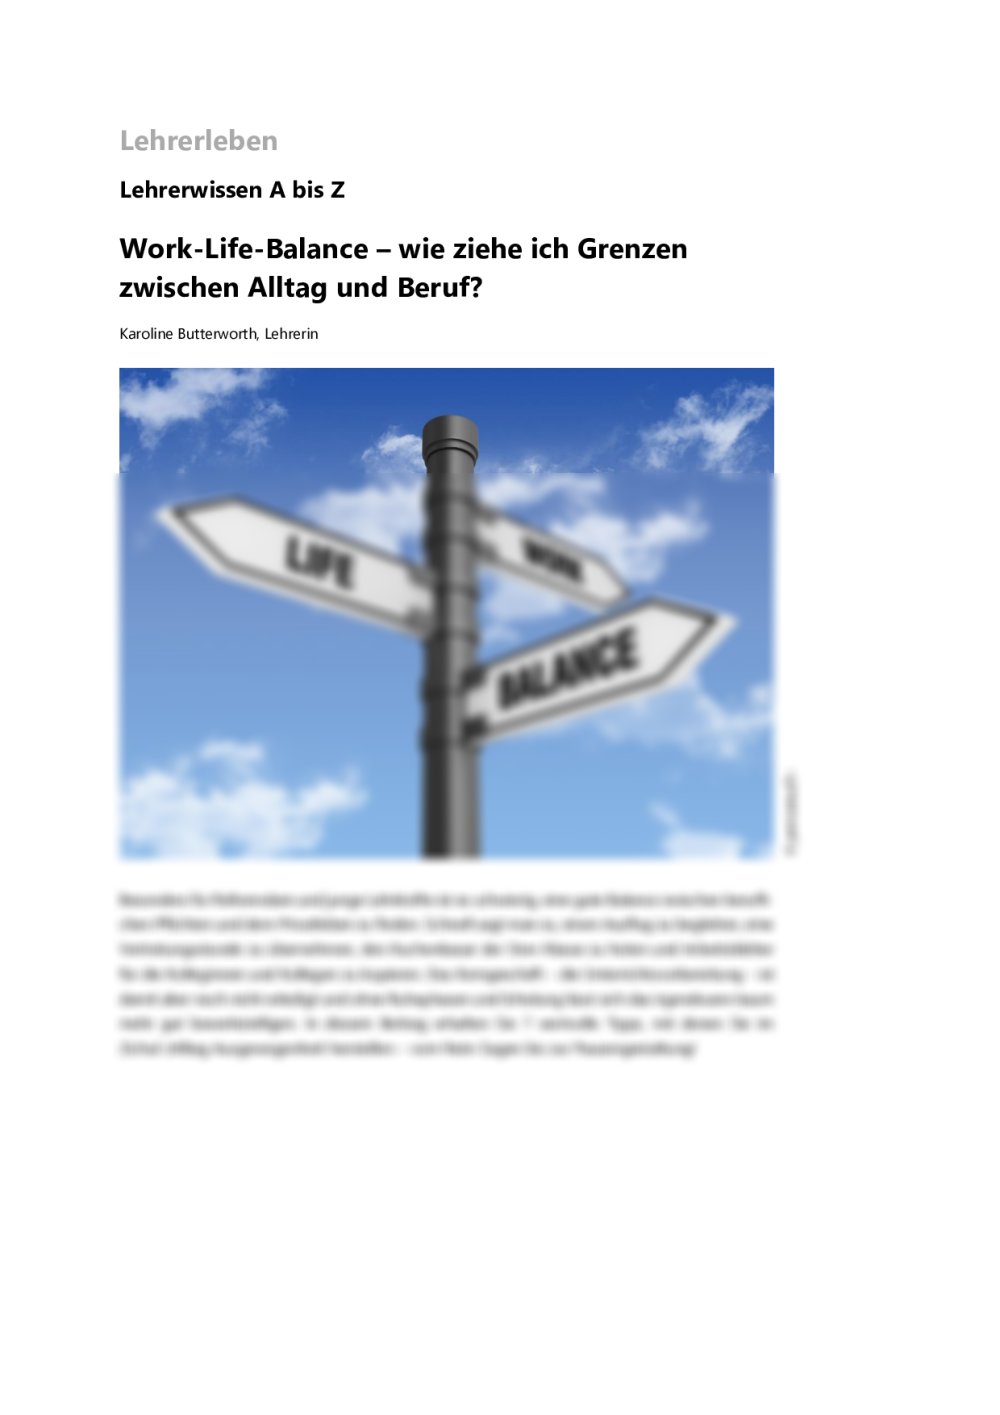 Eine ausgewogene Work-Life-Balance finden - Seite 1